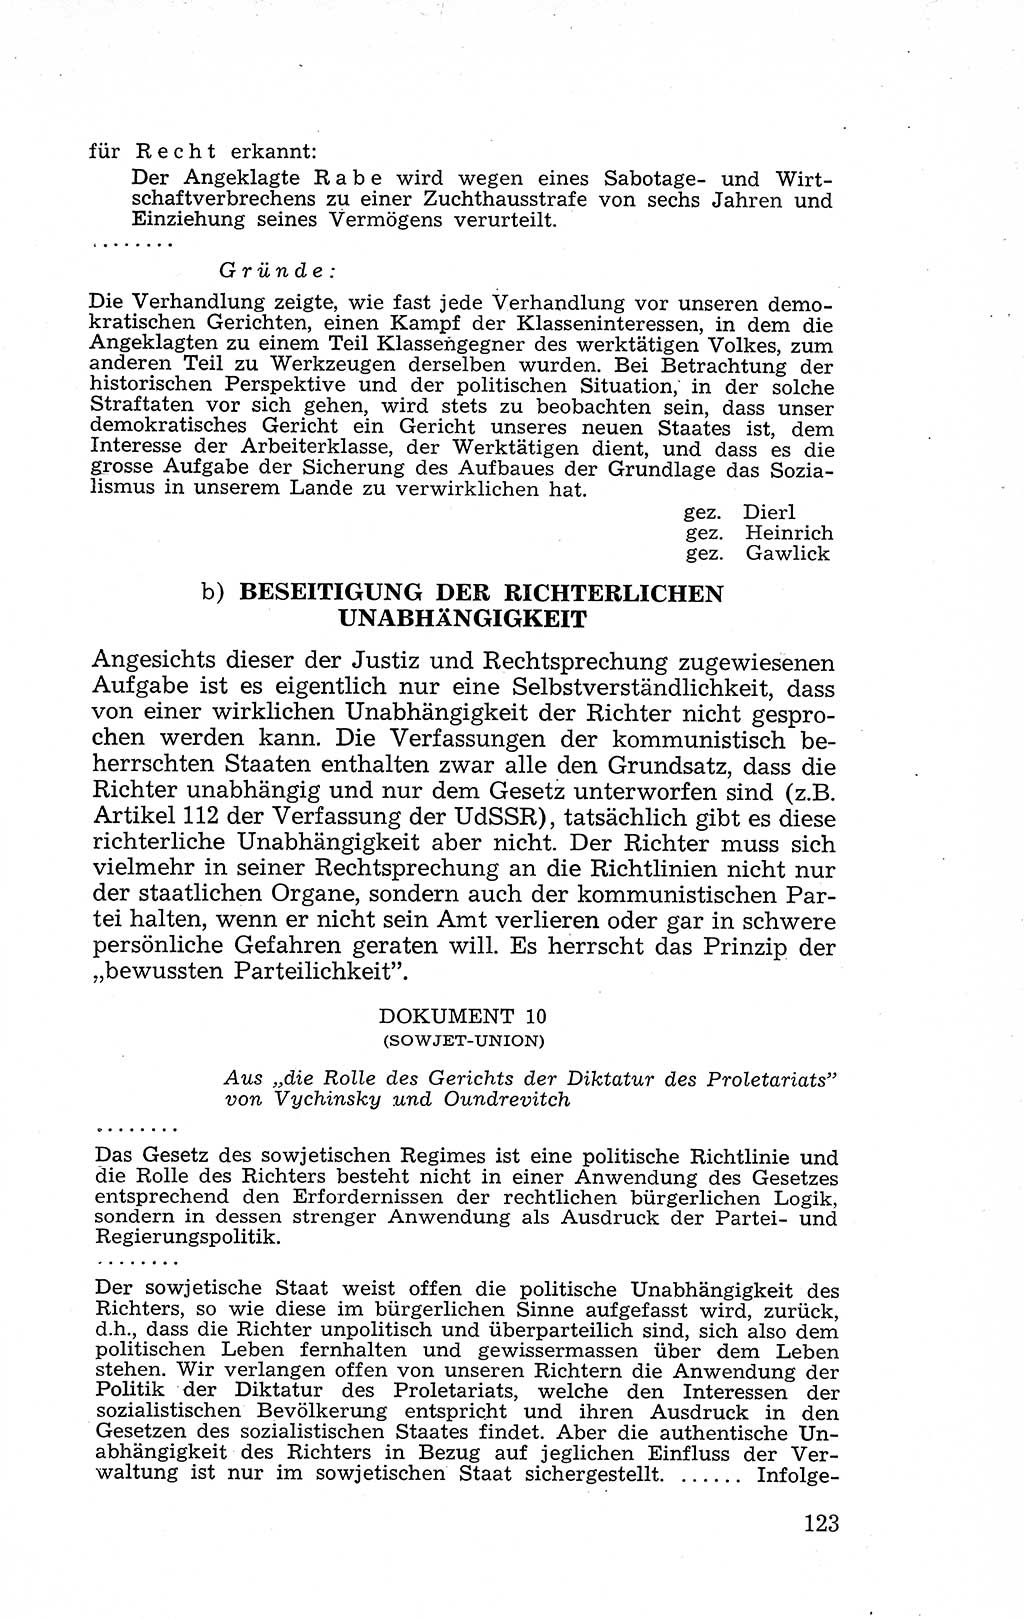 Recht in Fesseln, Dokumente, Internationale Juristen-Kommission [Bundesrepublik Deutschland (BRD)] 1955, Seite 123 (R. Dok. IJK BRD 1955, S. 123)